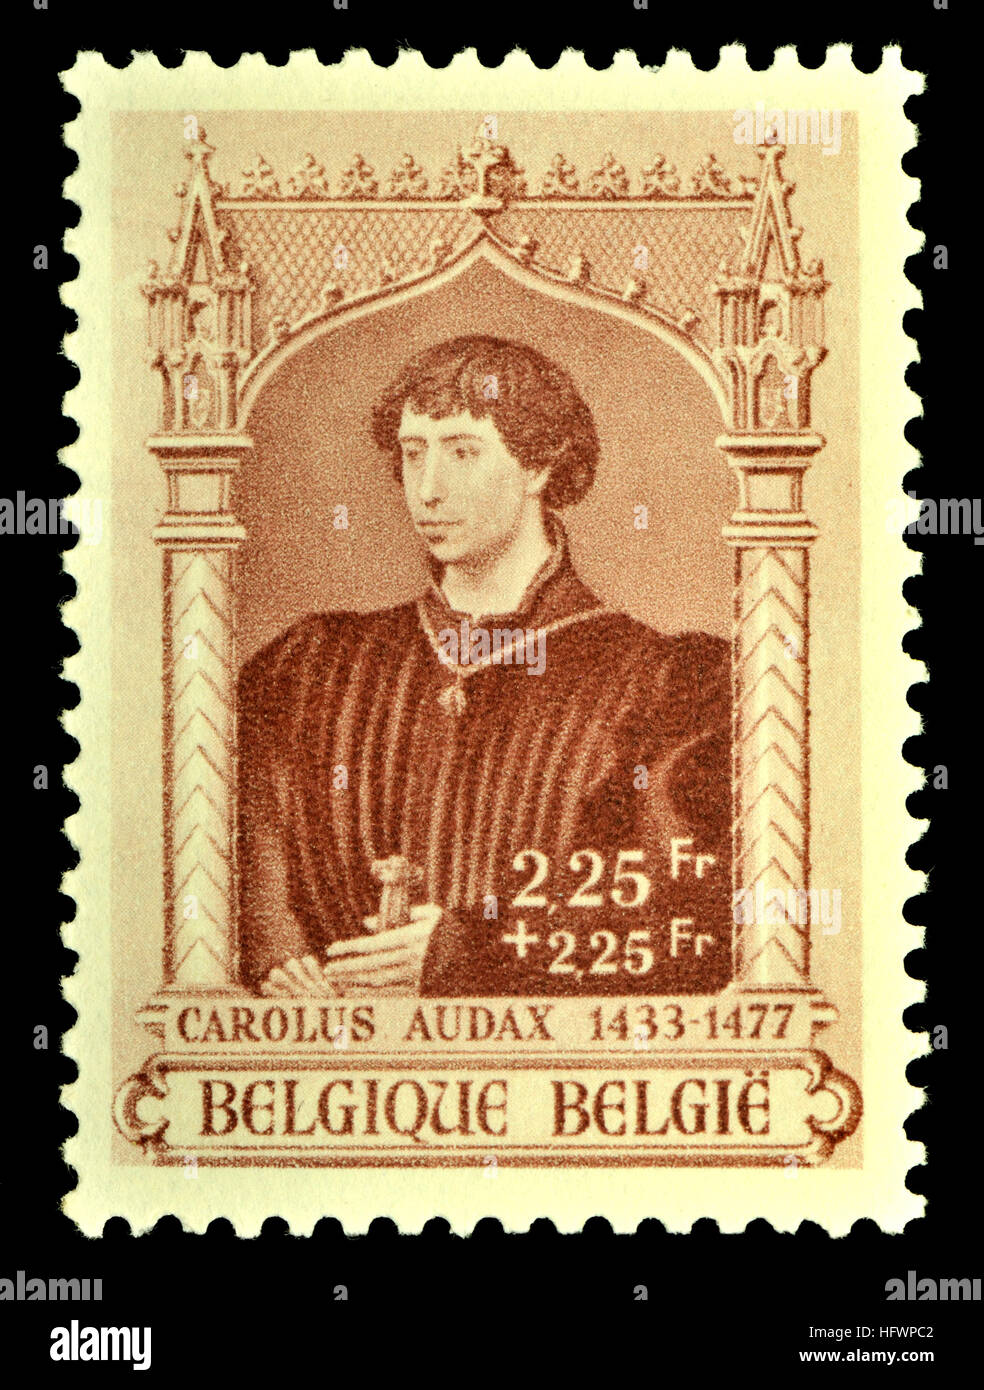 Timbre-poste belge (1941) : Charles le Téméraire / Charles le Téméraire / Karel de Stoute (1433-1477), dernier duc de Bourgogne de la maison de Valois - Banque D'Images